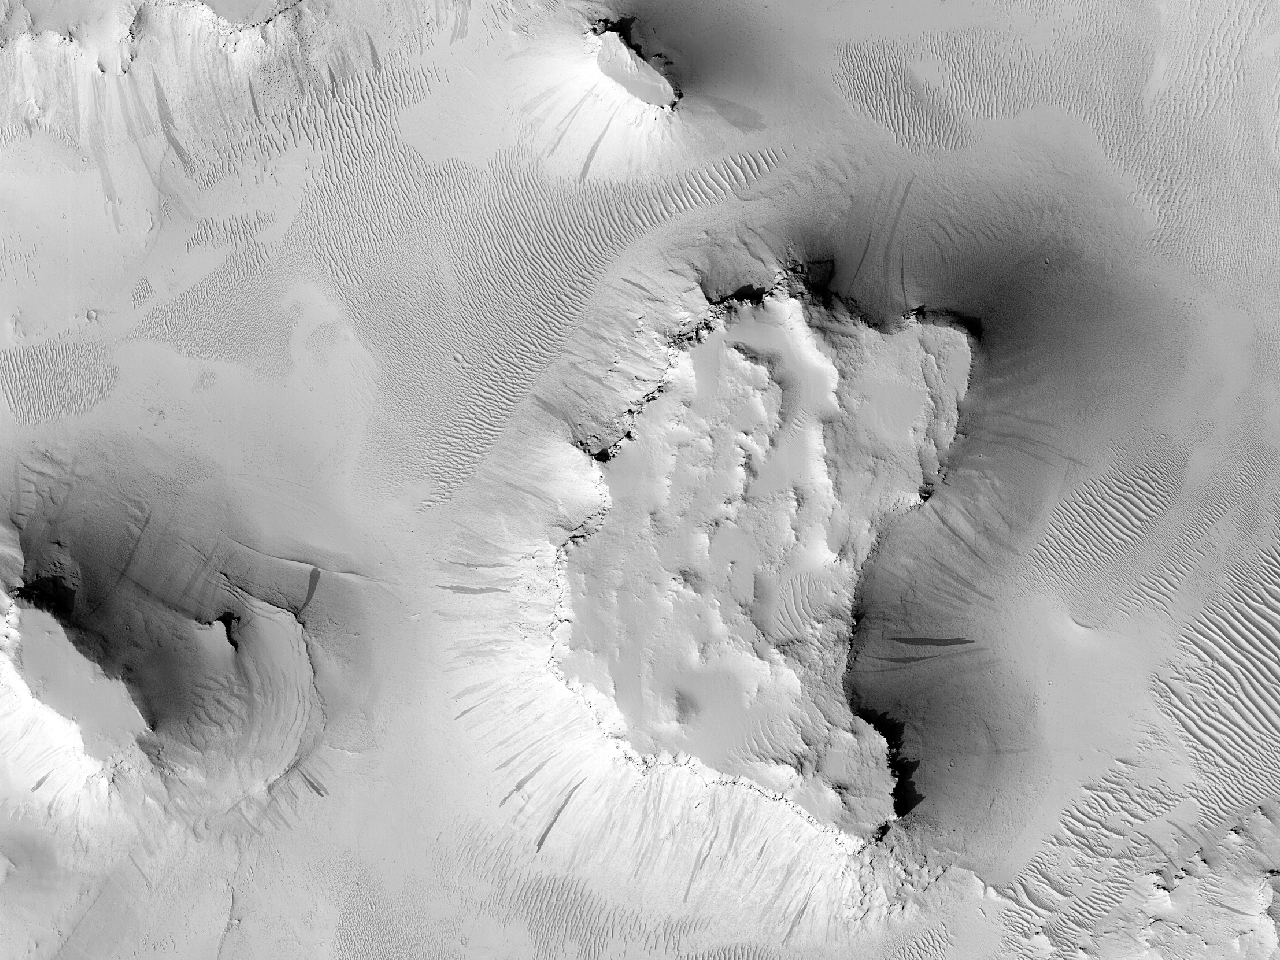 Stroombekken in krater